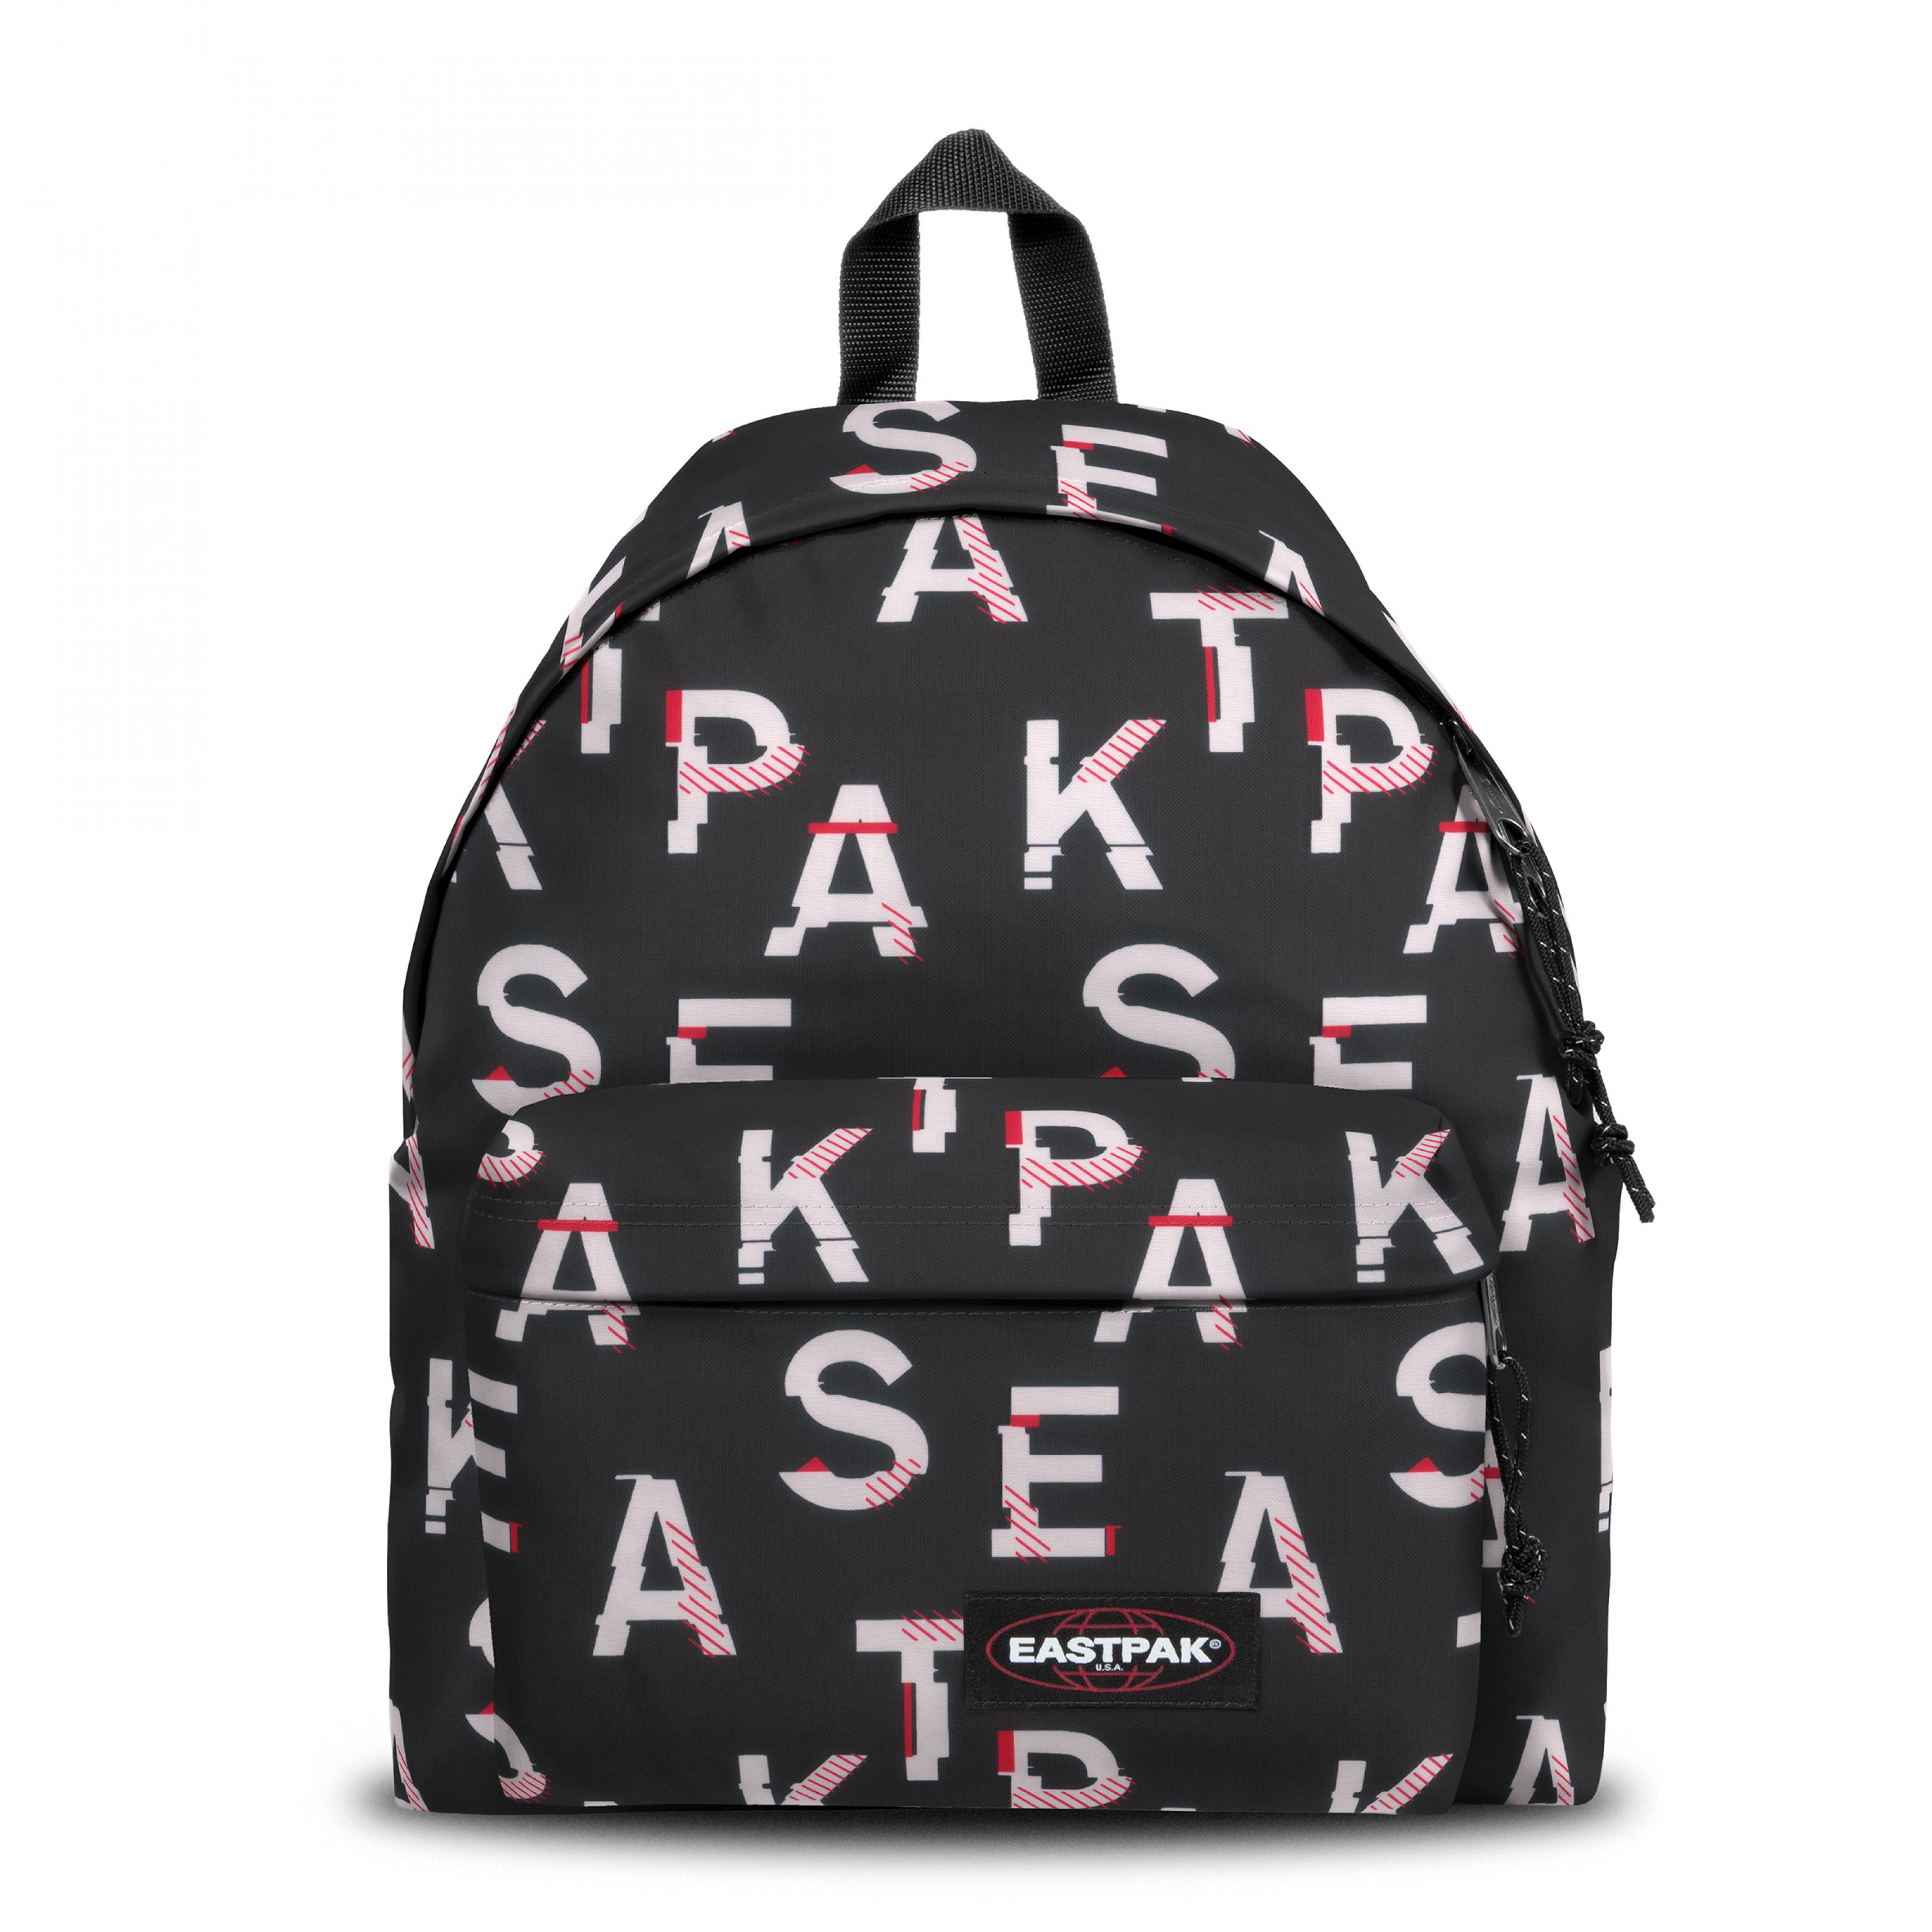 Eastpak - Padded Pak'r Mash Core Backpack, Black, large image number 0